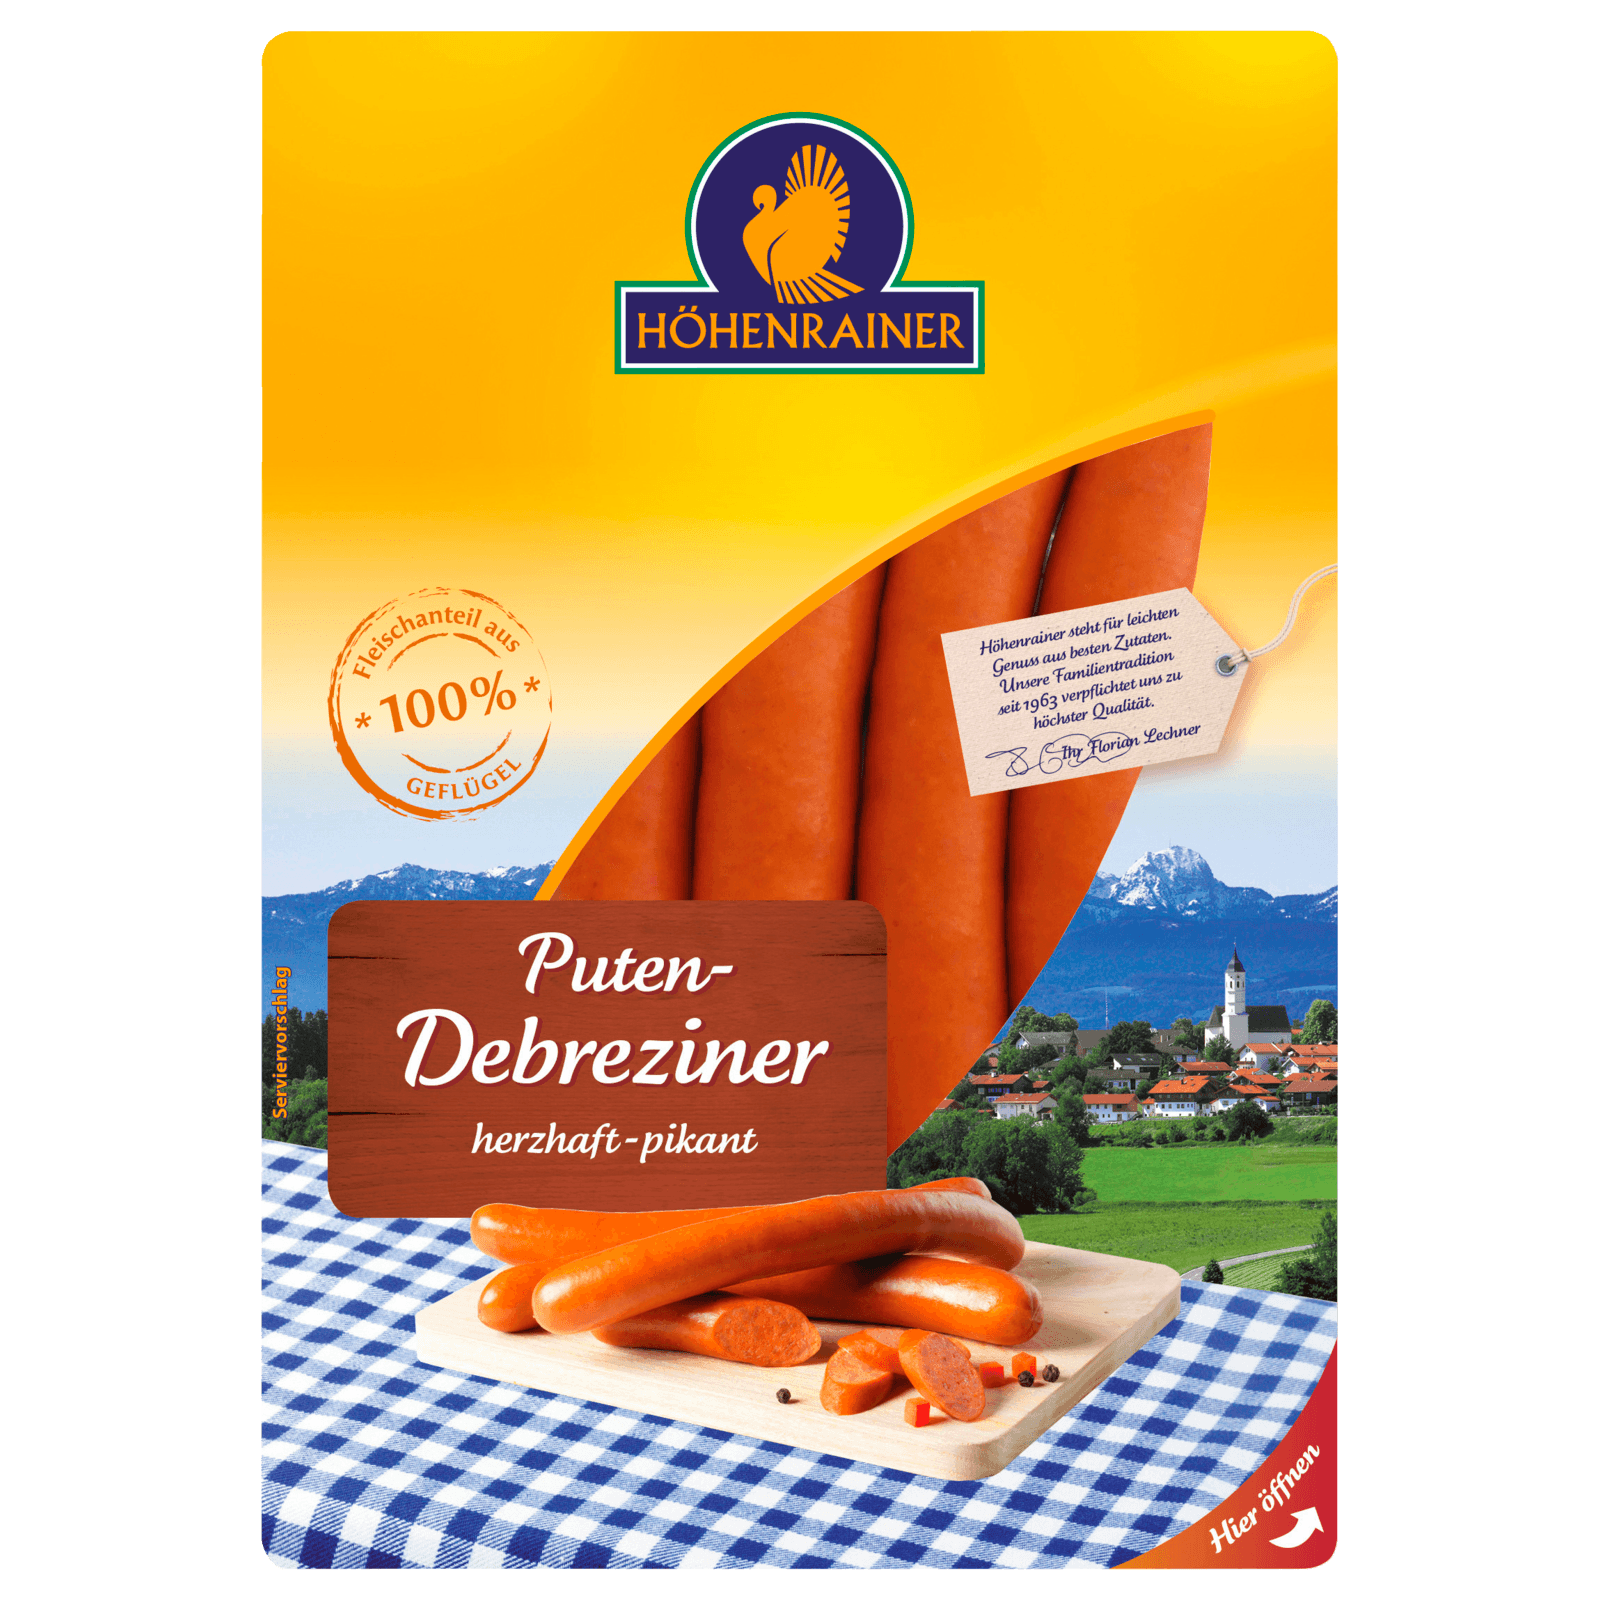 Salami & Paprikawurst online kaufen - REWE.de - Seite 5